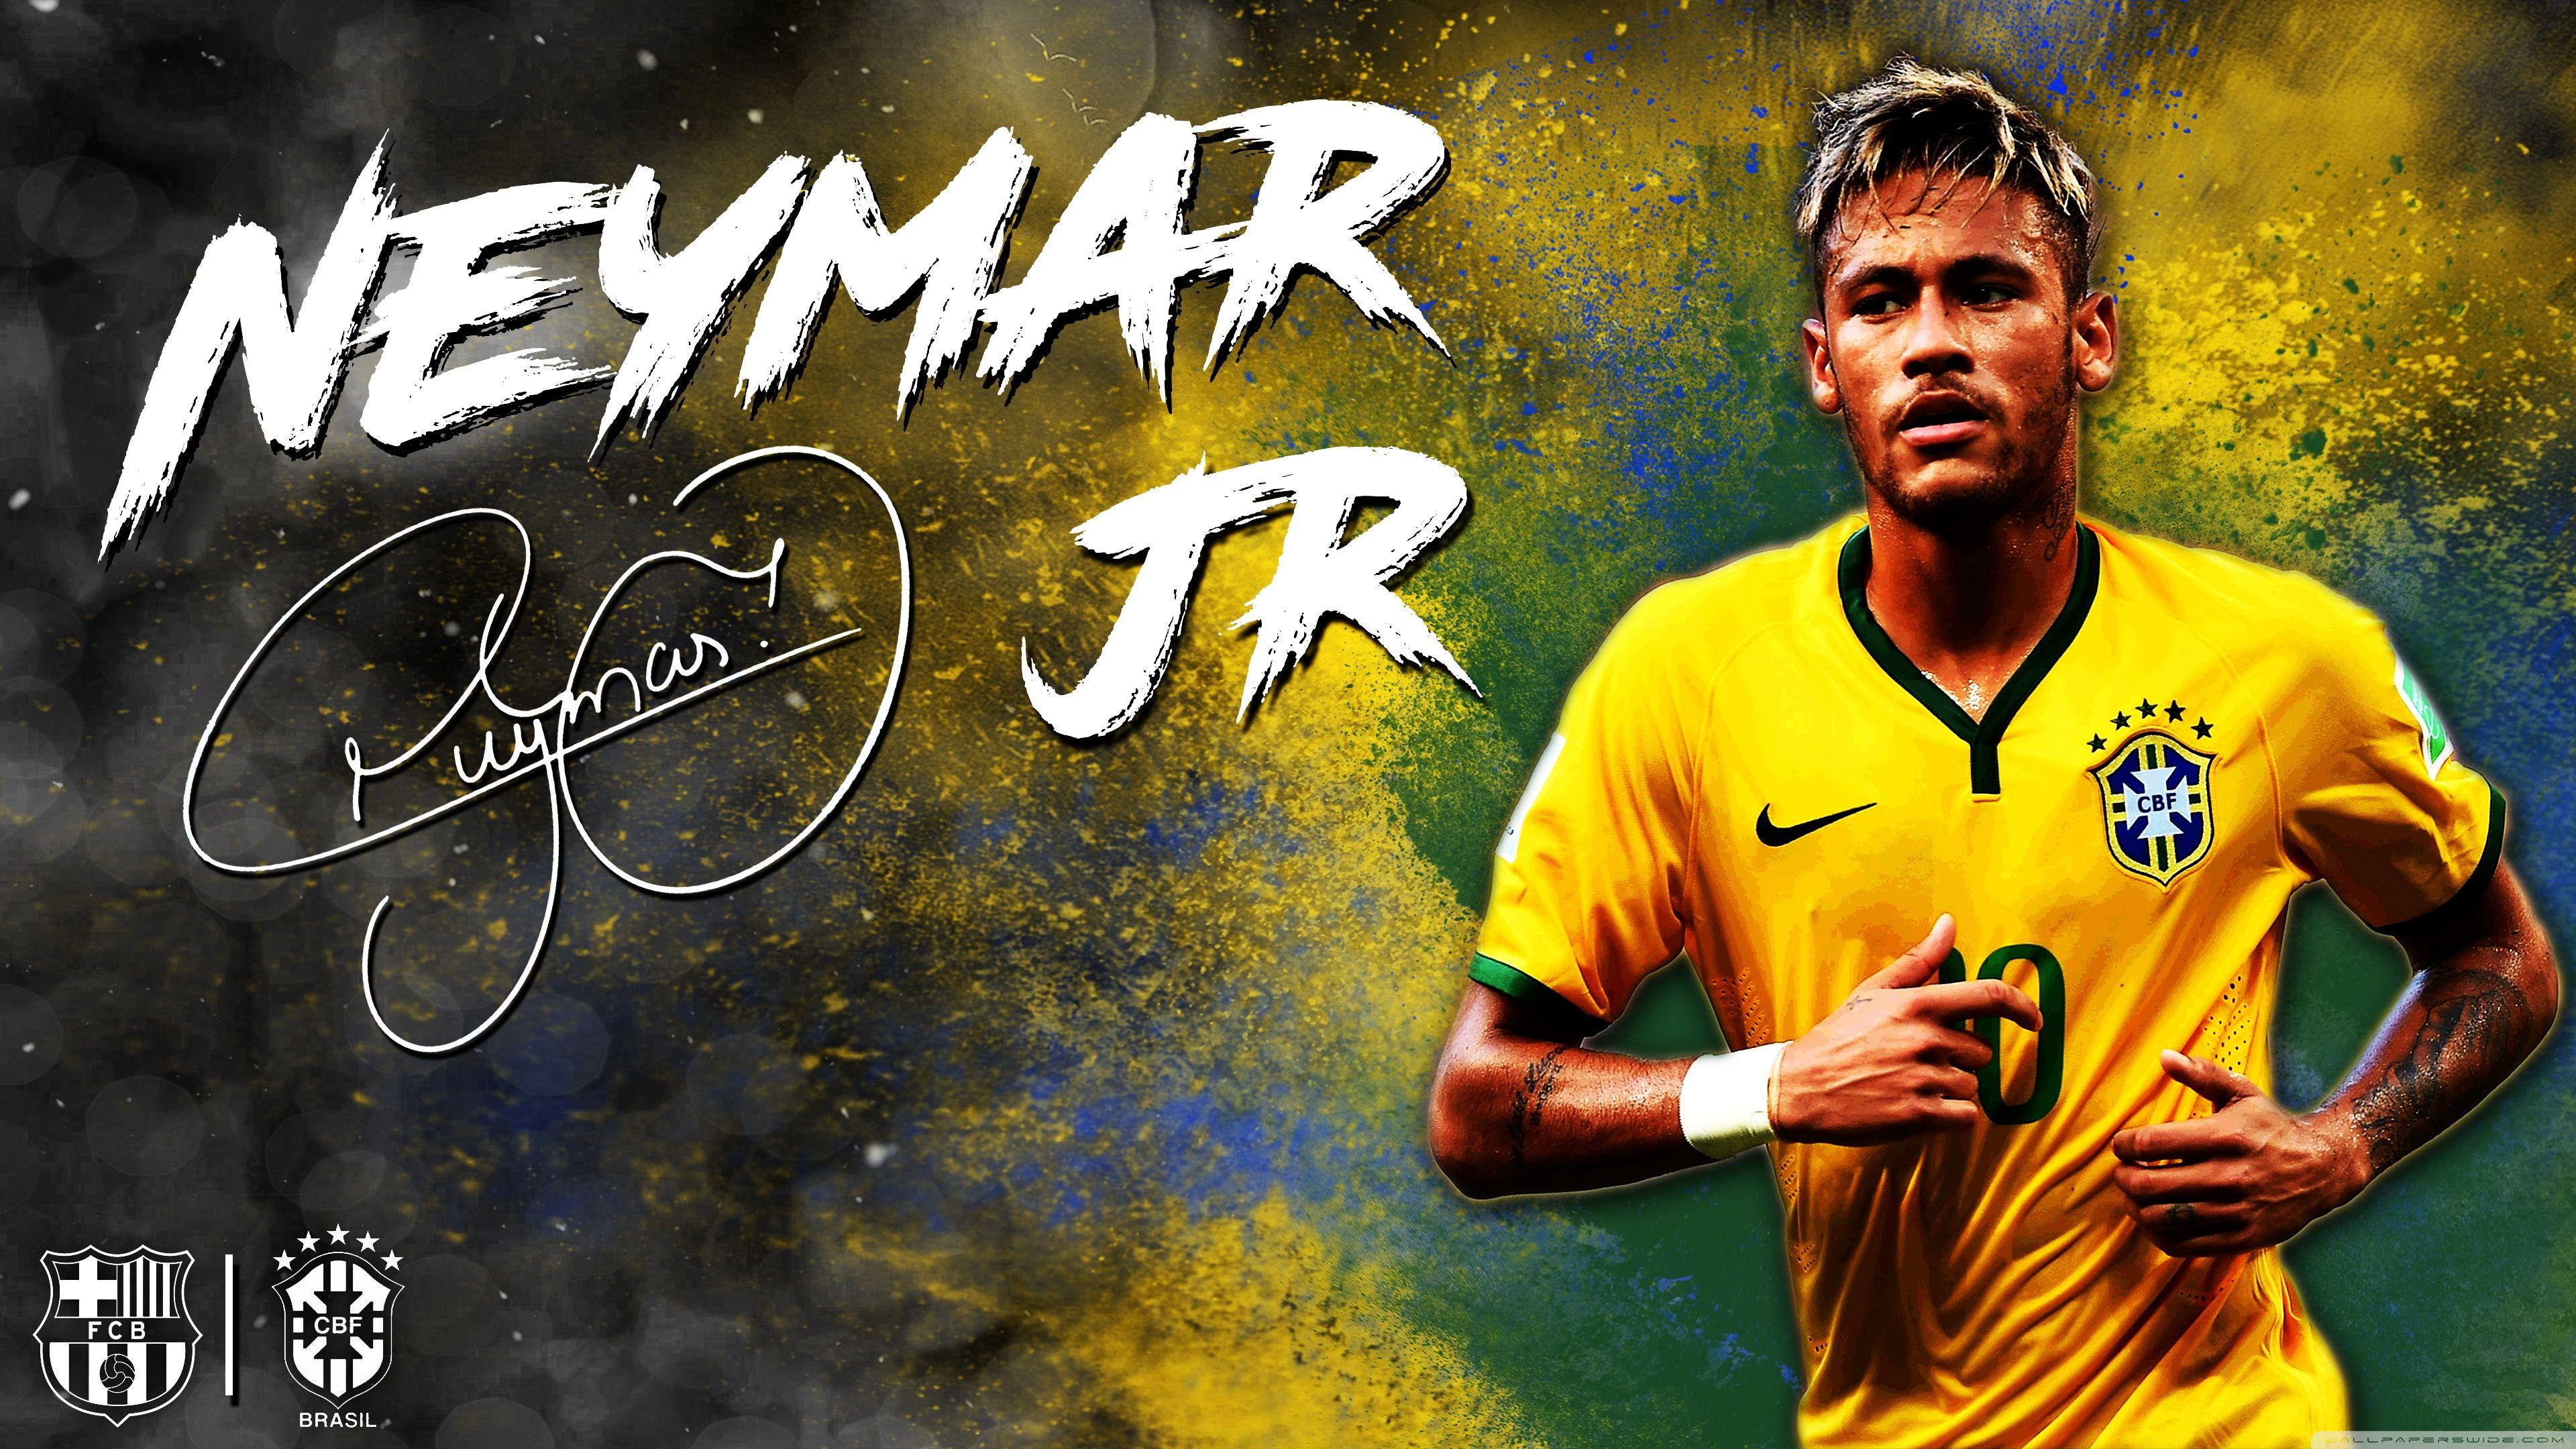 3840 x 2160 · jpeg - Neymar JR Brazil Wallpapers - Wallpaper Cave